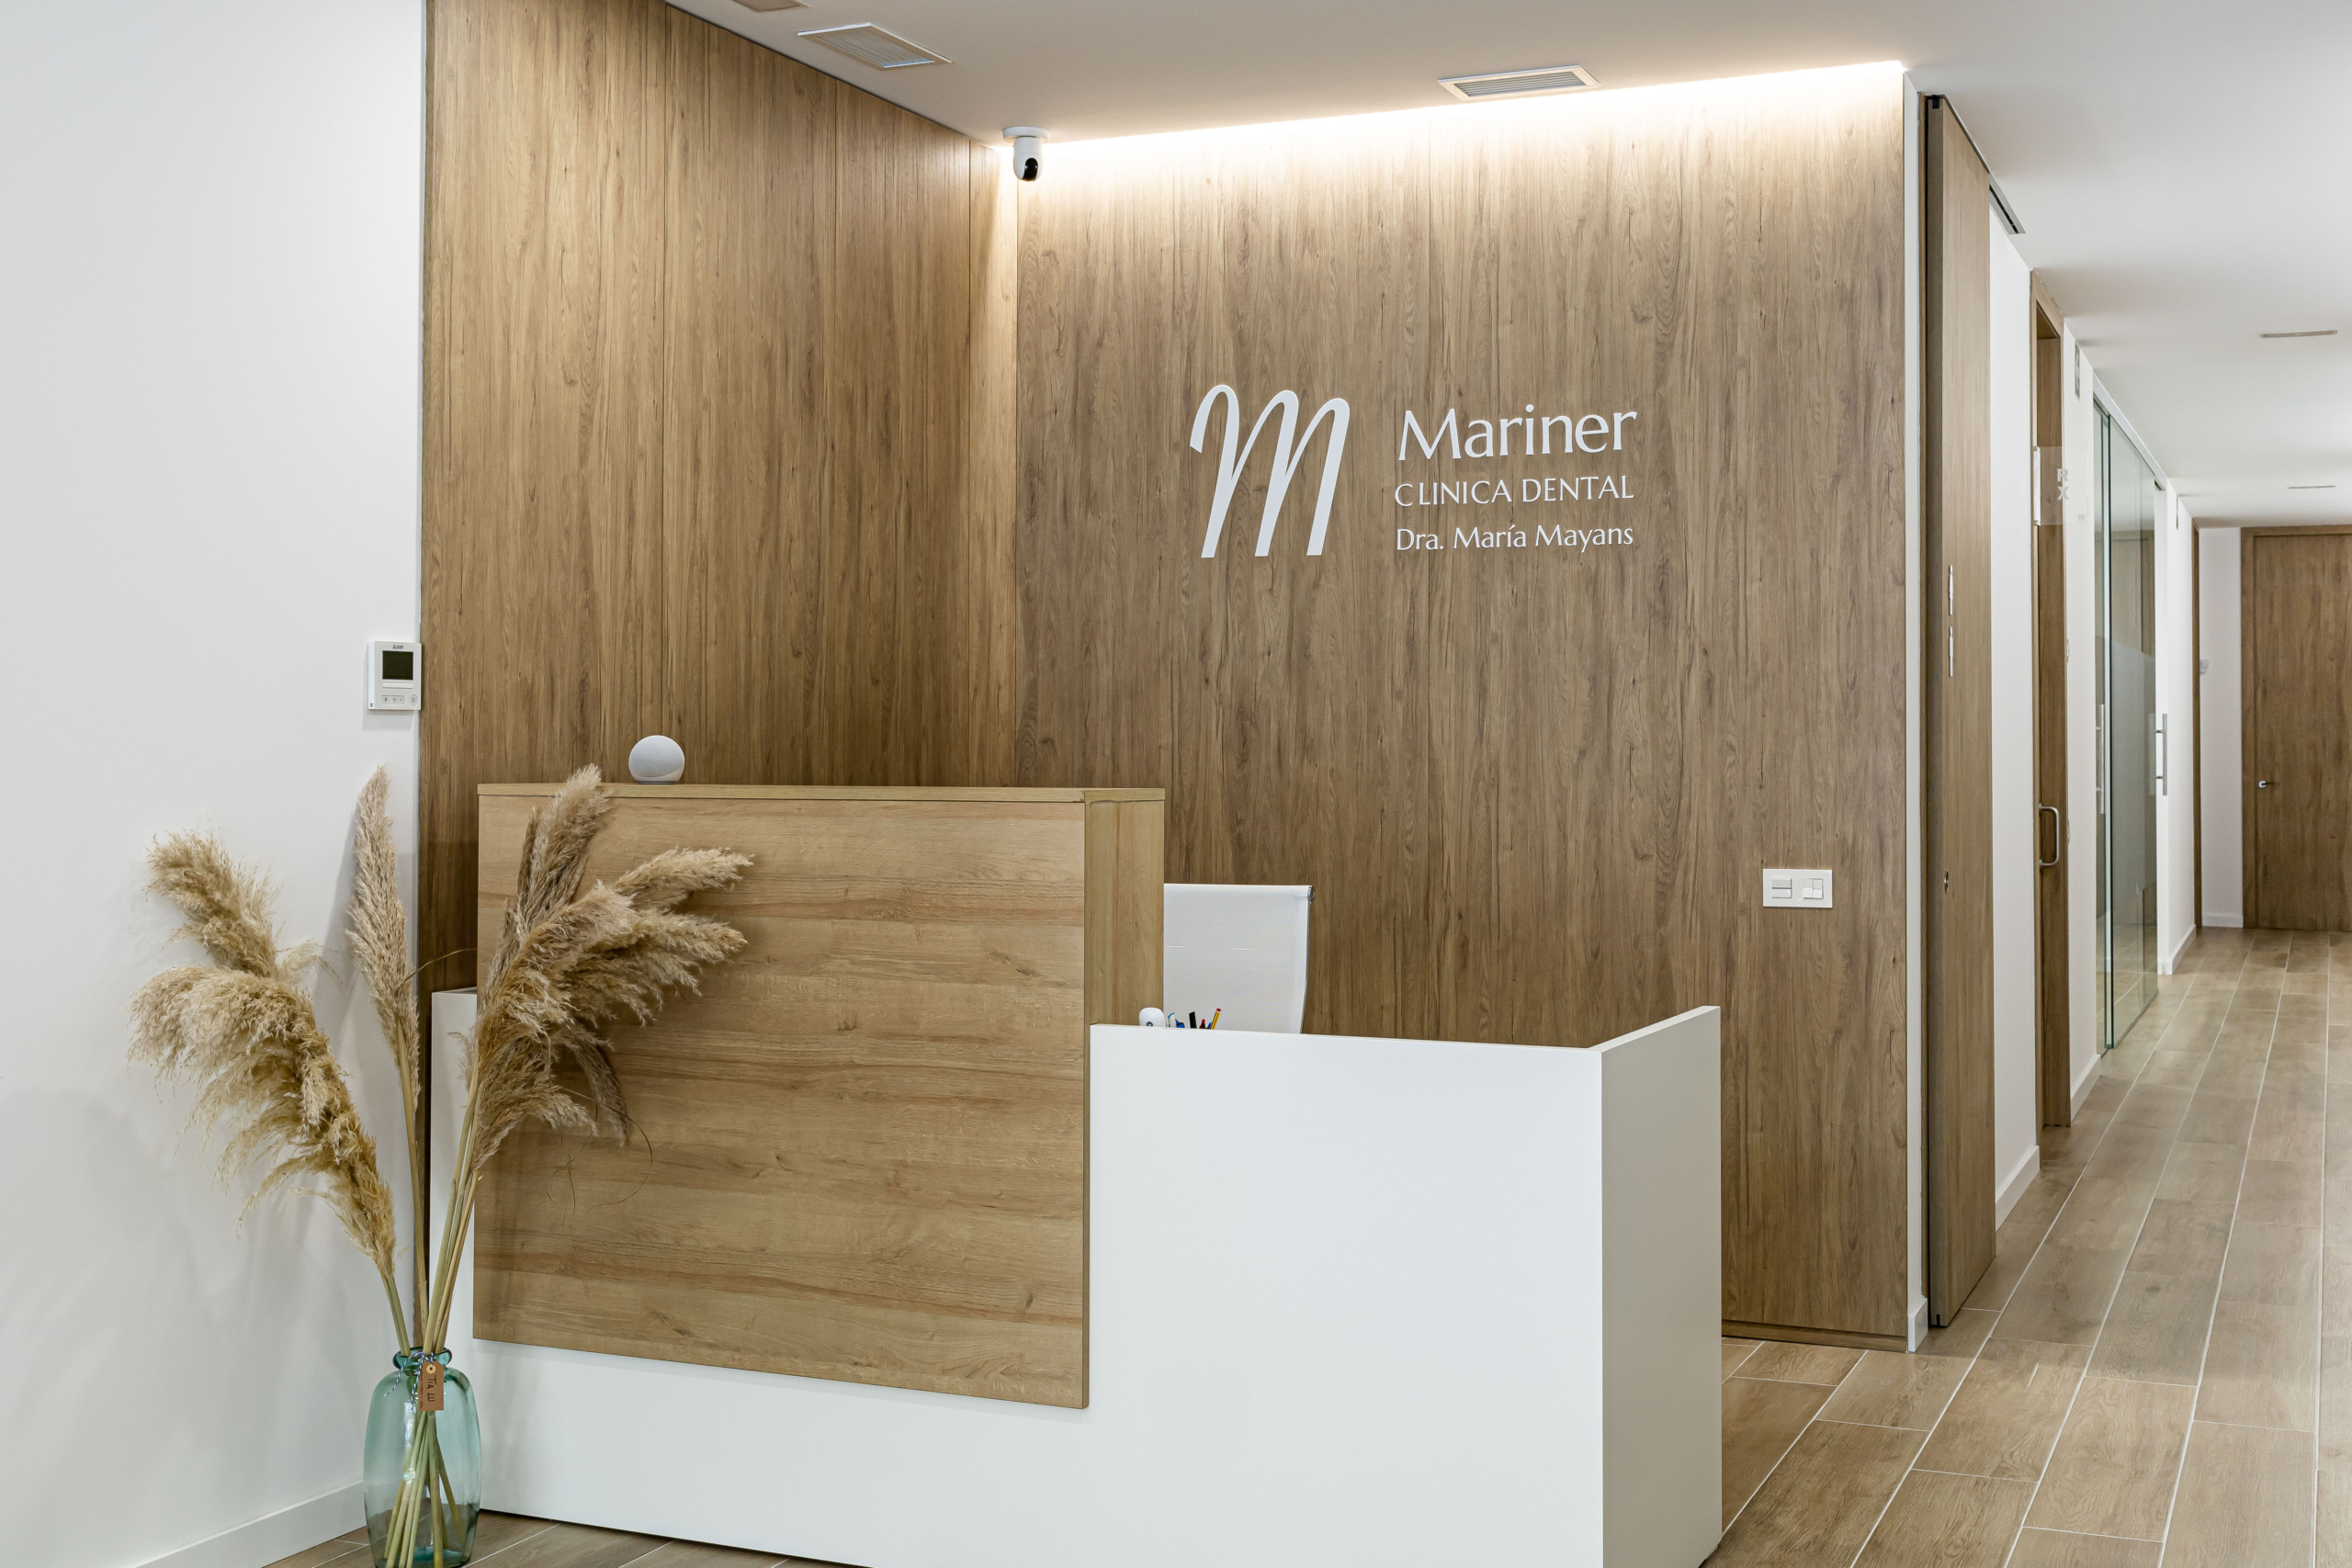 Sala de recepción con nombre ¨Mariner¨, acabado moderno con colores blancos y madera